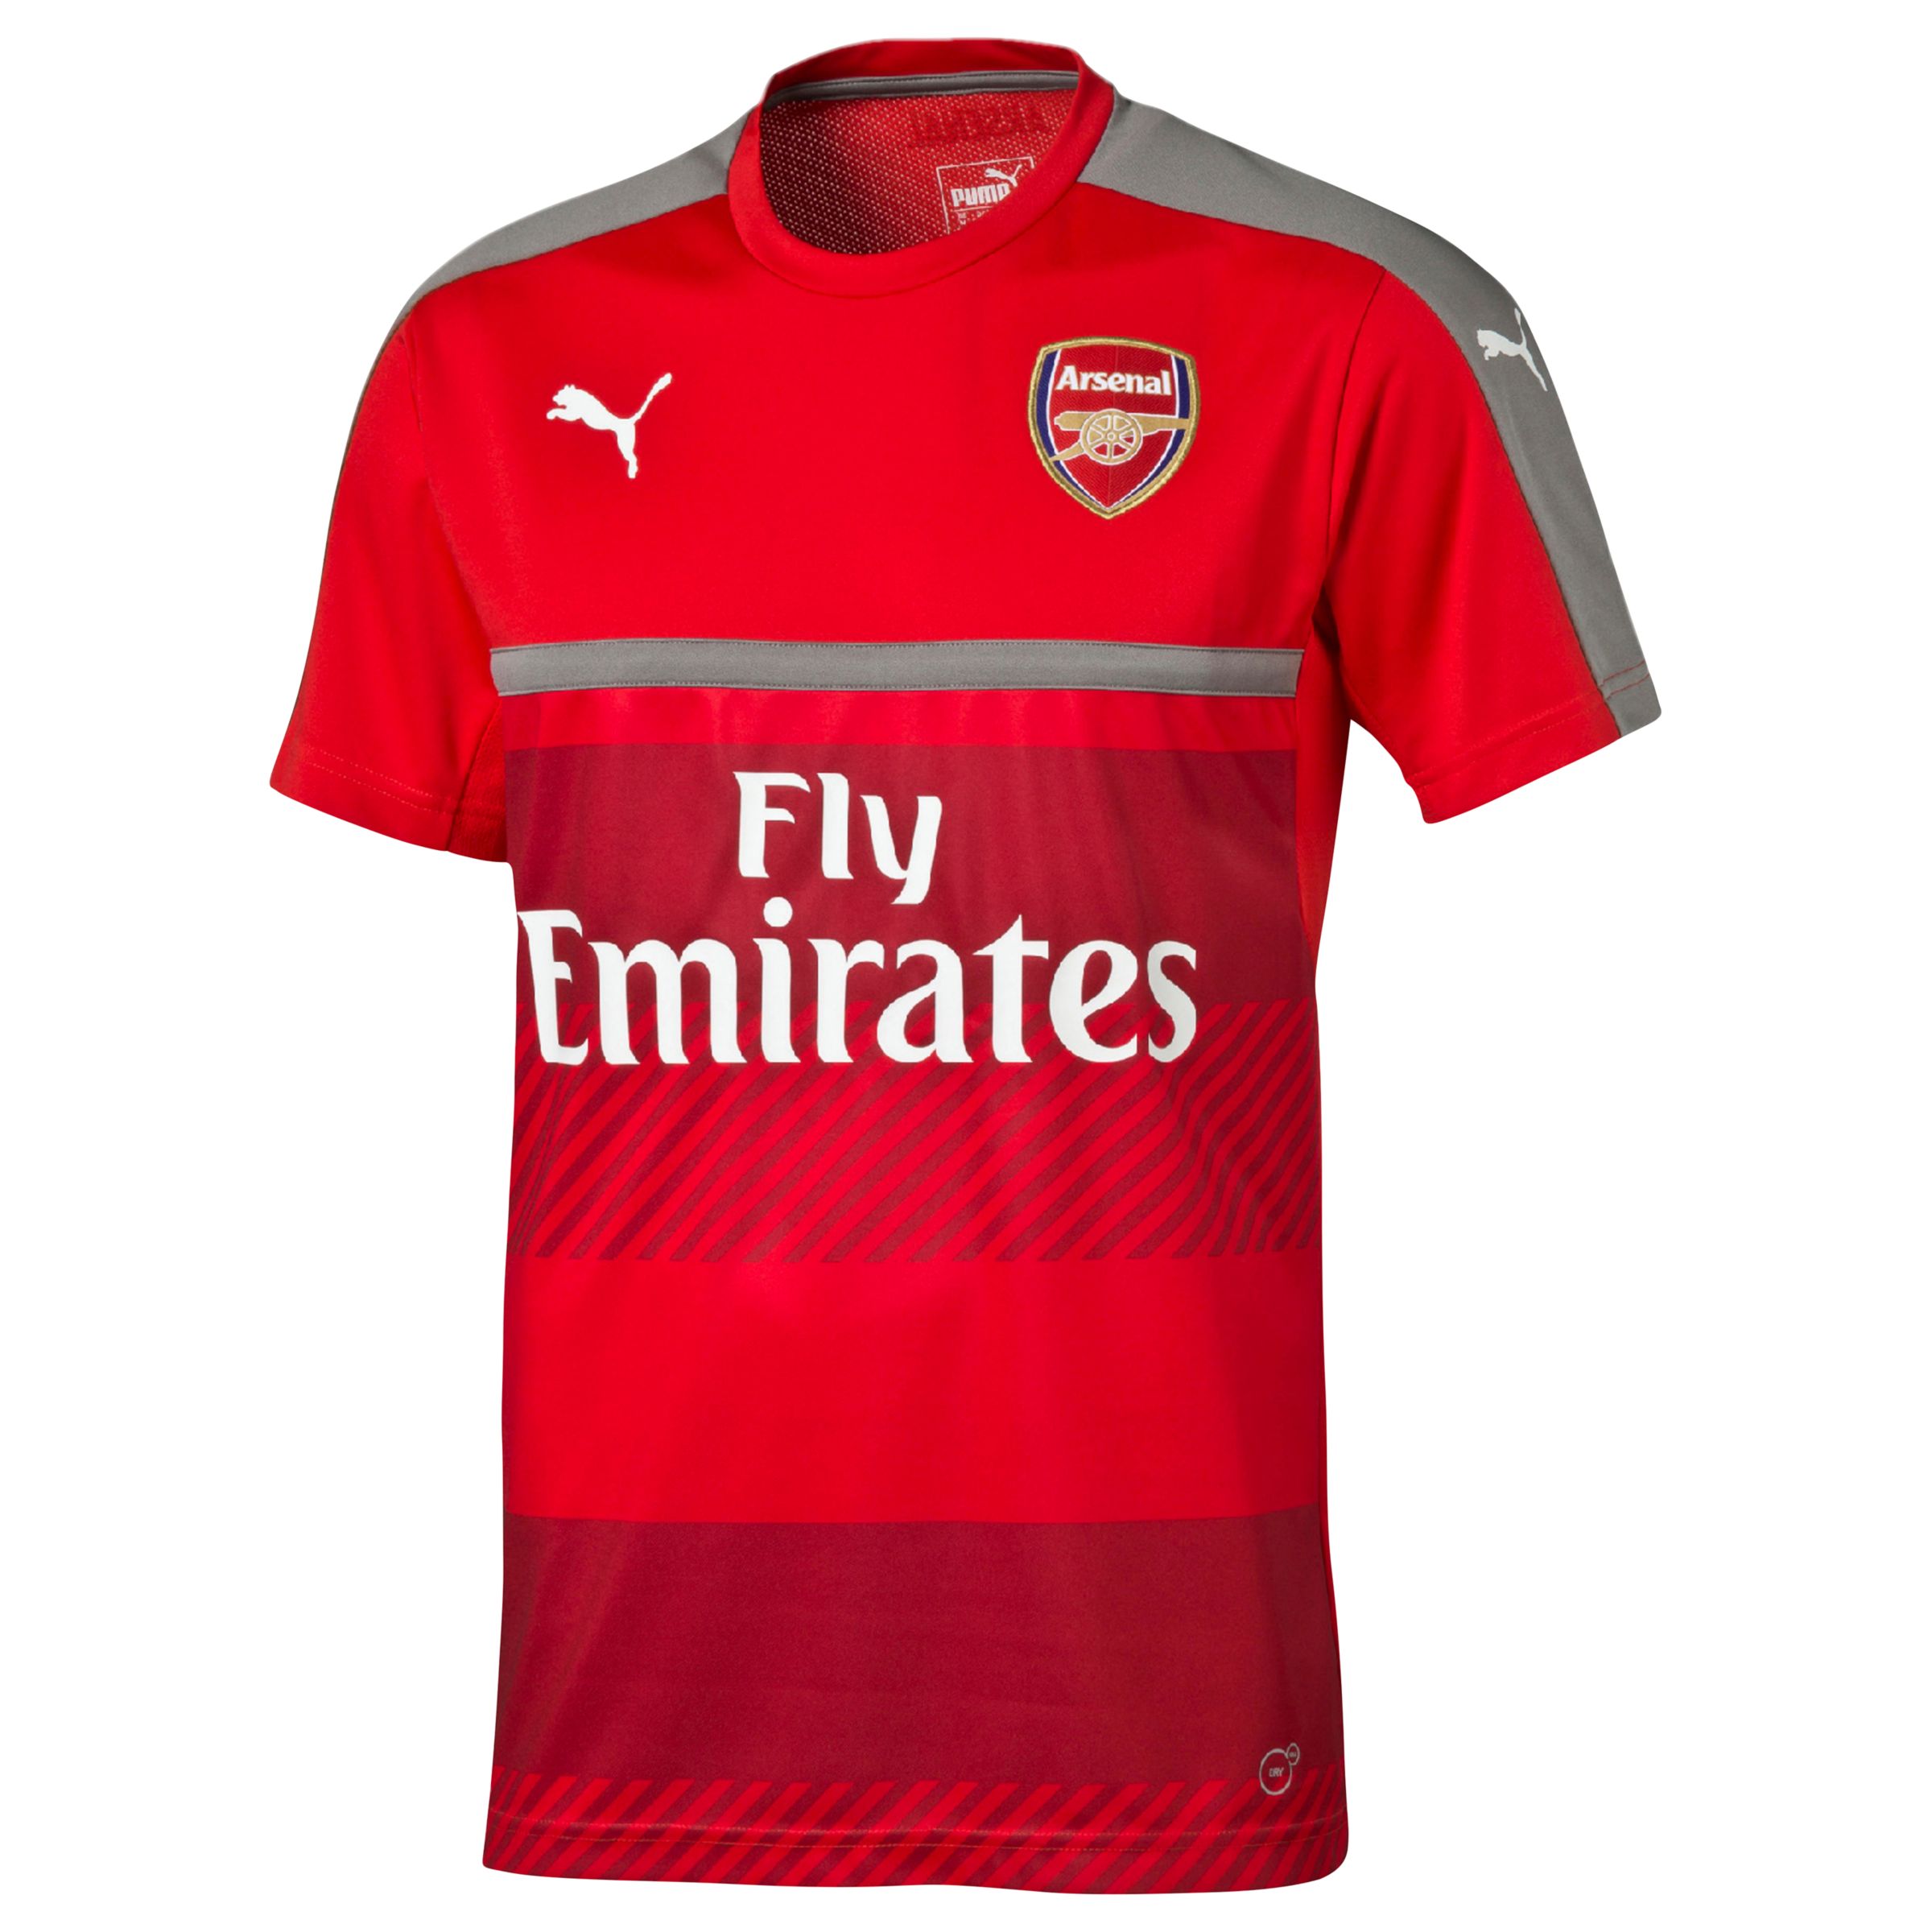 Arsenal Fc Jersey